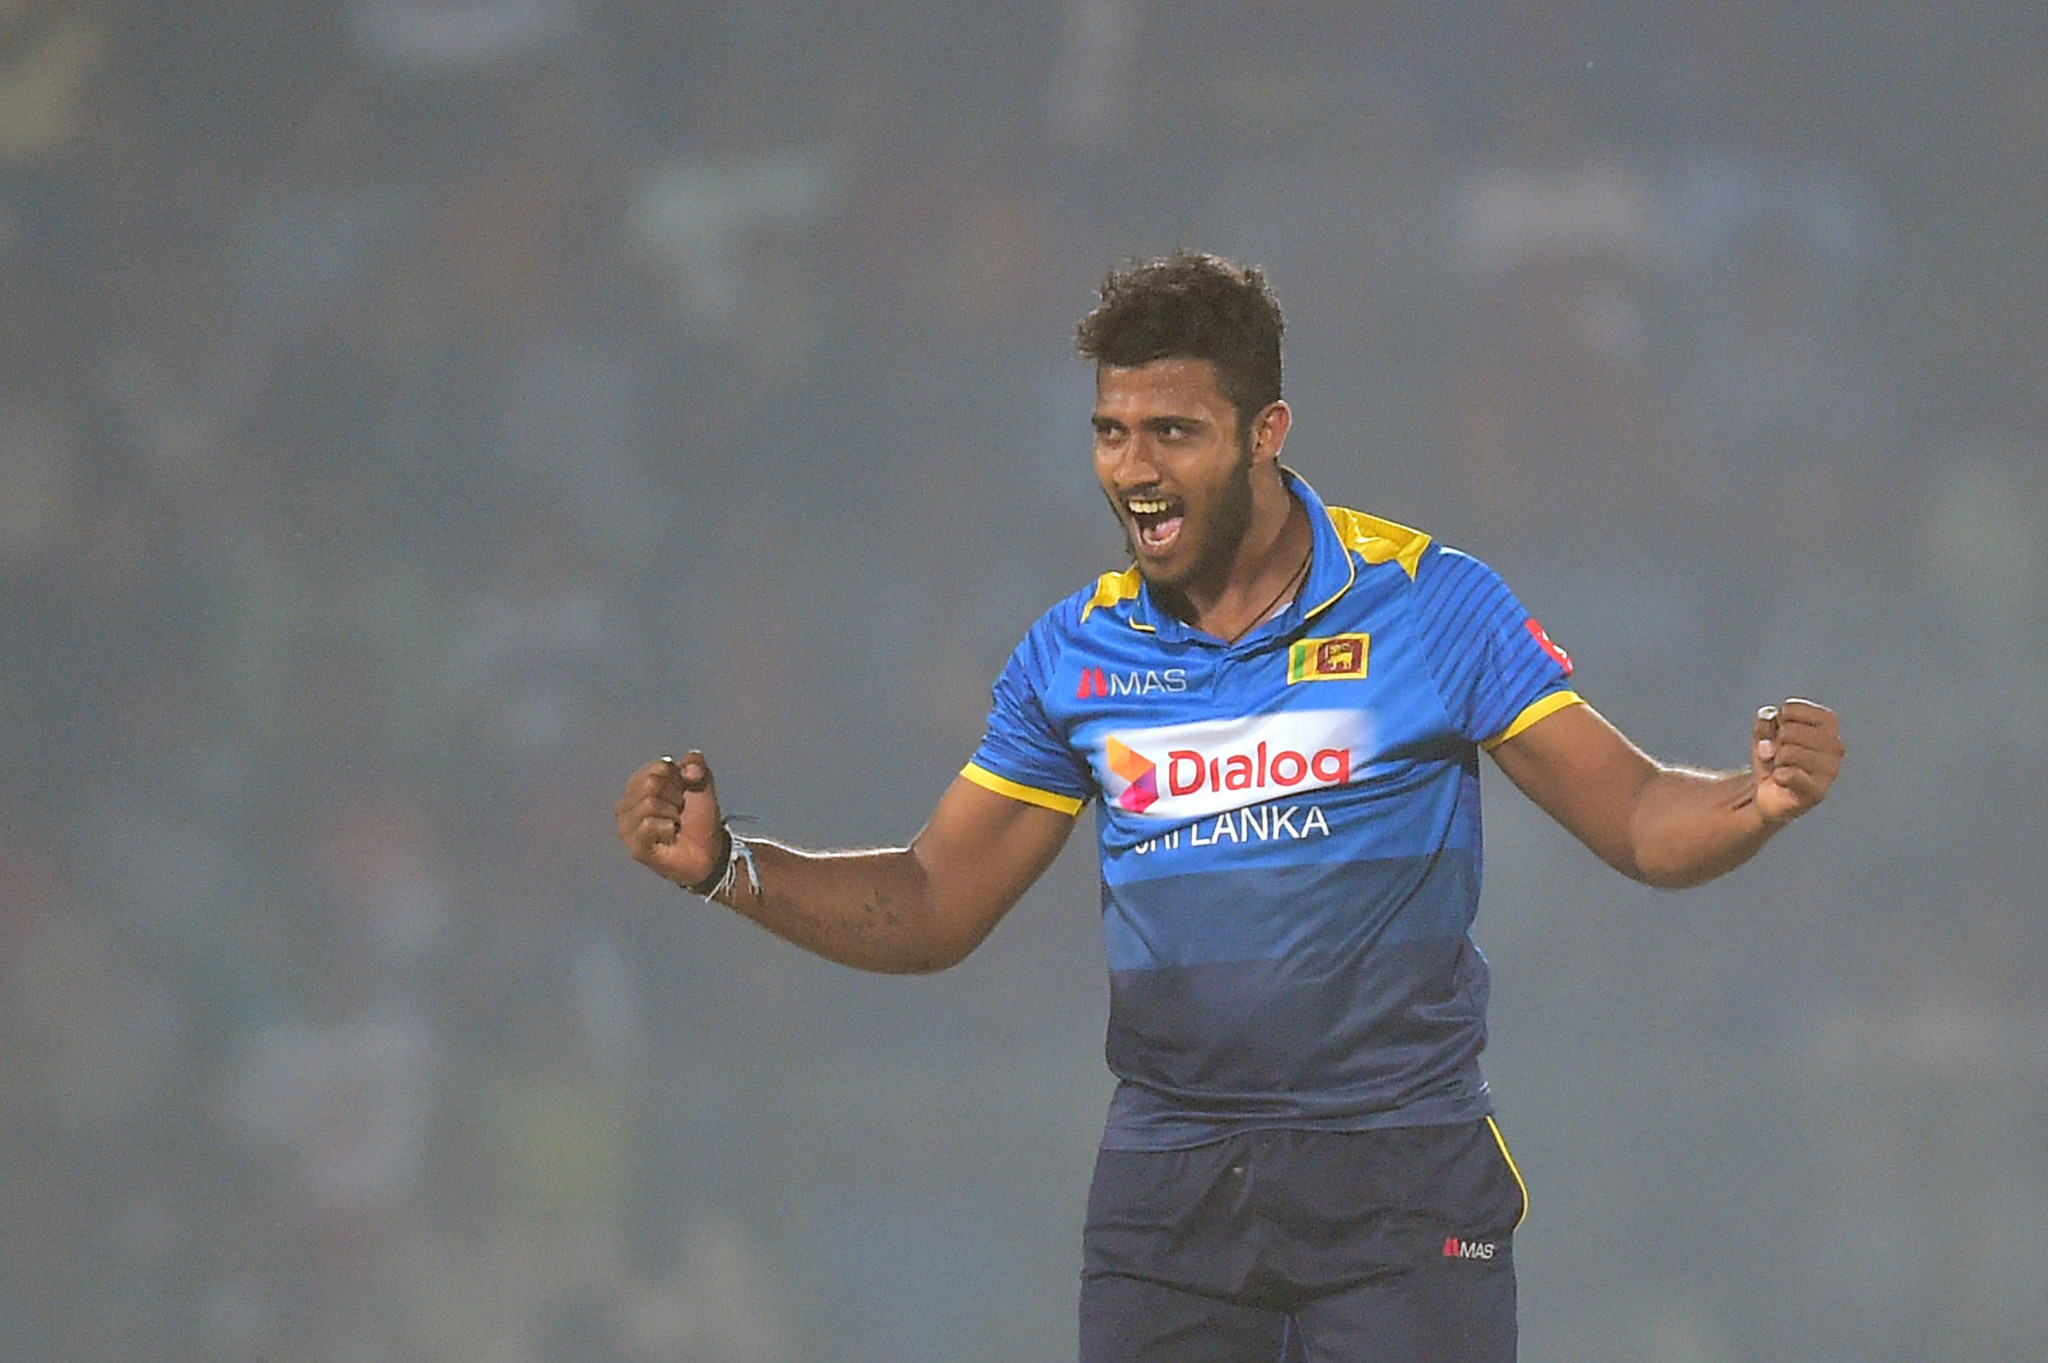 Sri Lankan cricketer Madushanka suspended for alleged heroin possession